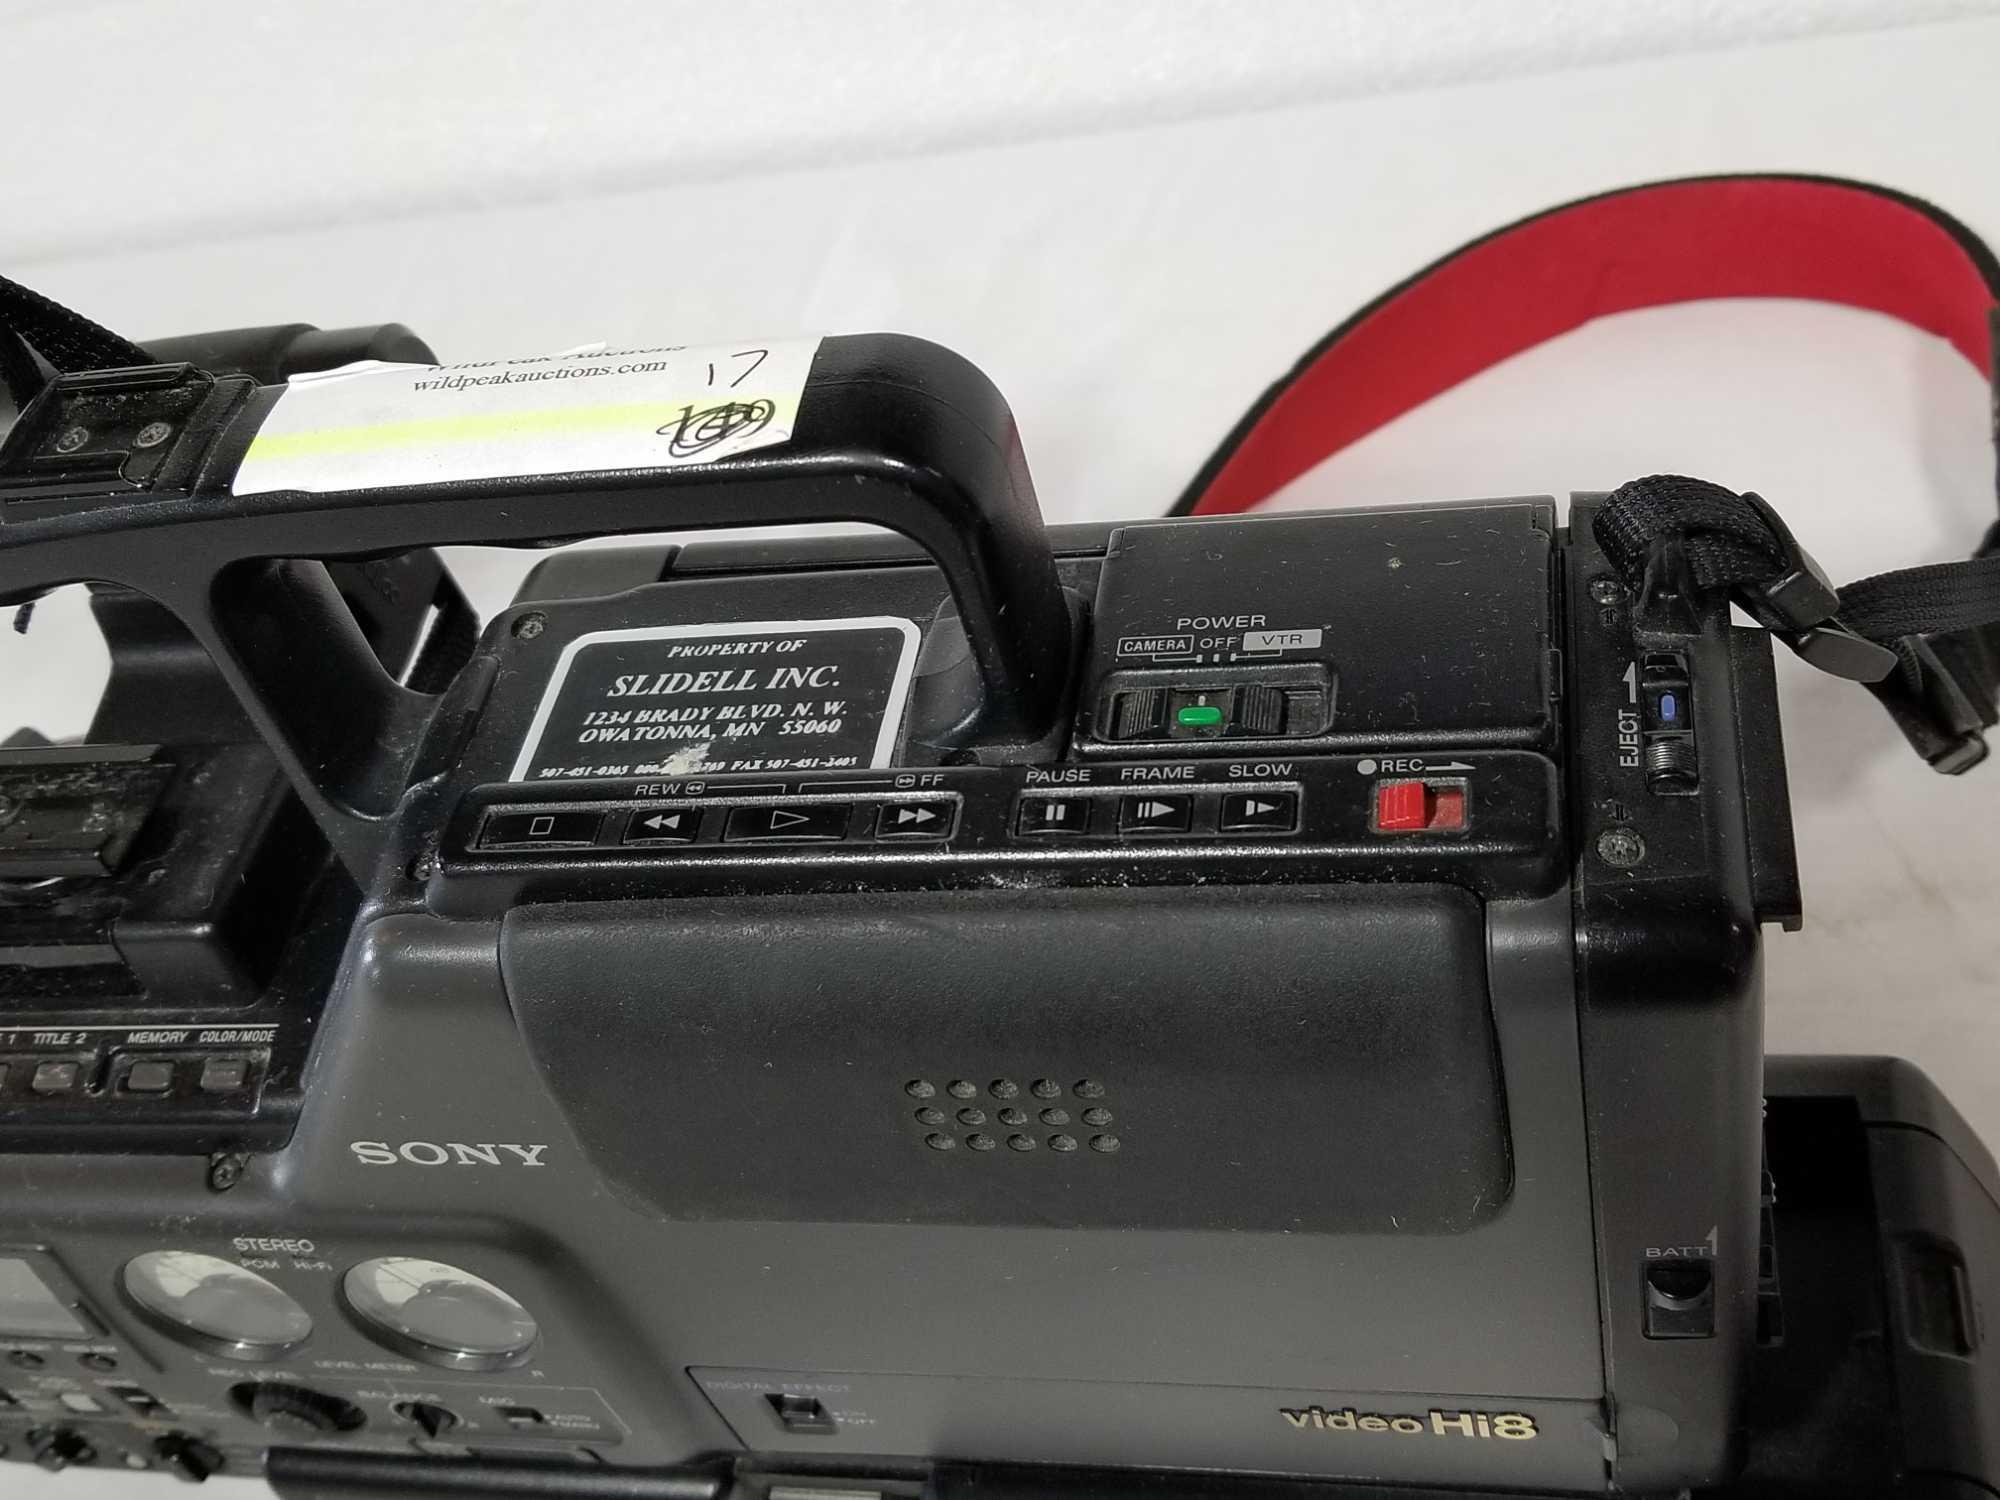 Sony Ccd V5000 Hi8 Pro Compartiment cassette ne ferme pas